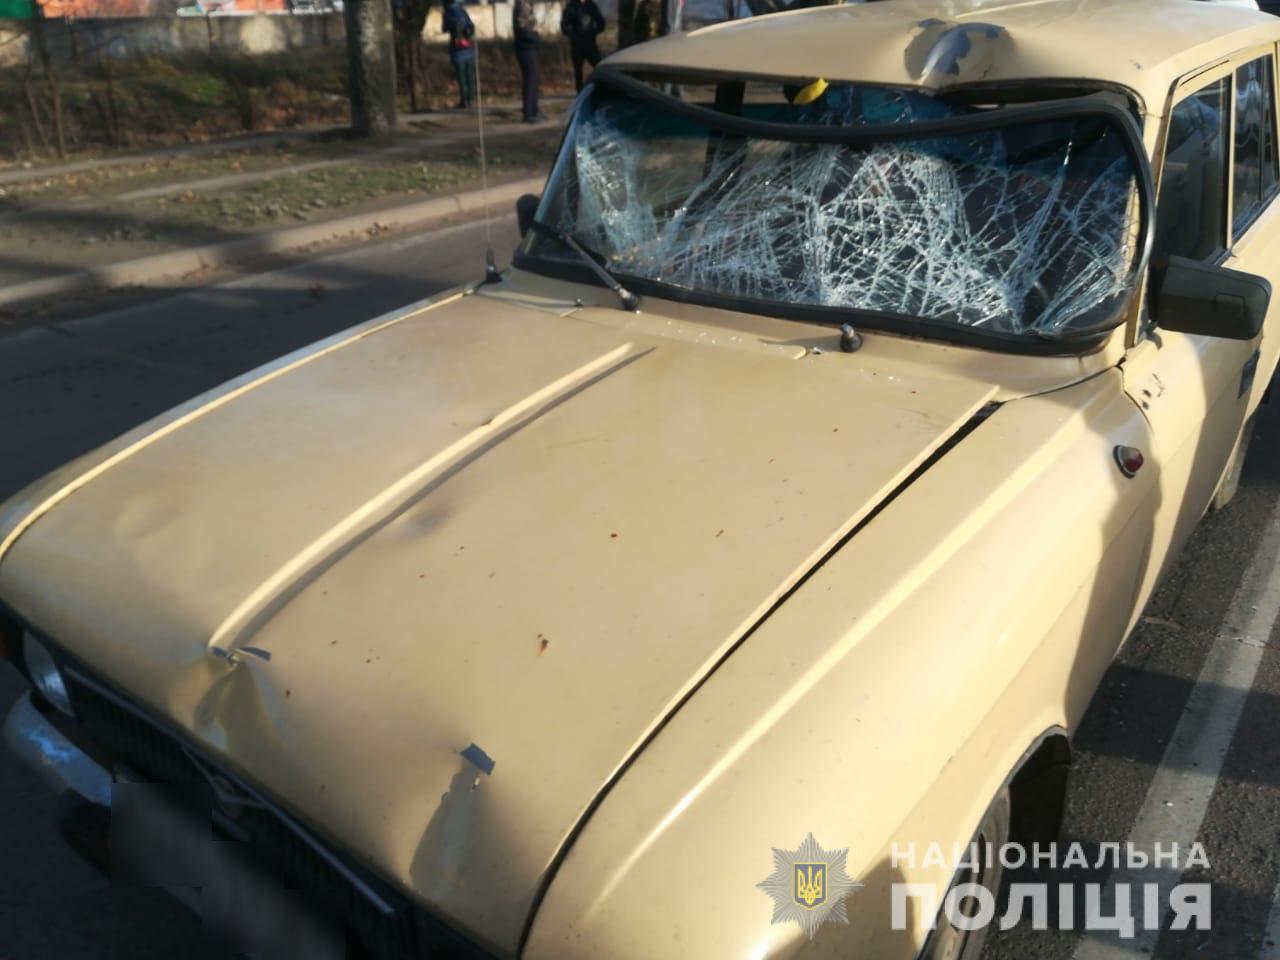 Пострадавший в утреннем ДТП на Николаевском шоссе скончался в больнице: подробности аварии